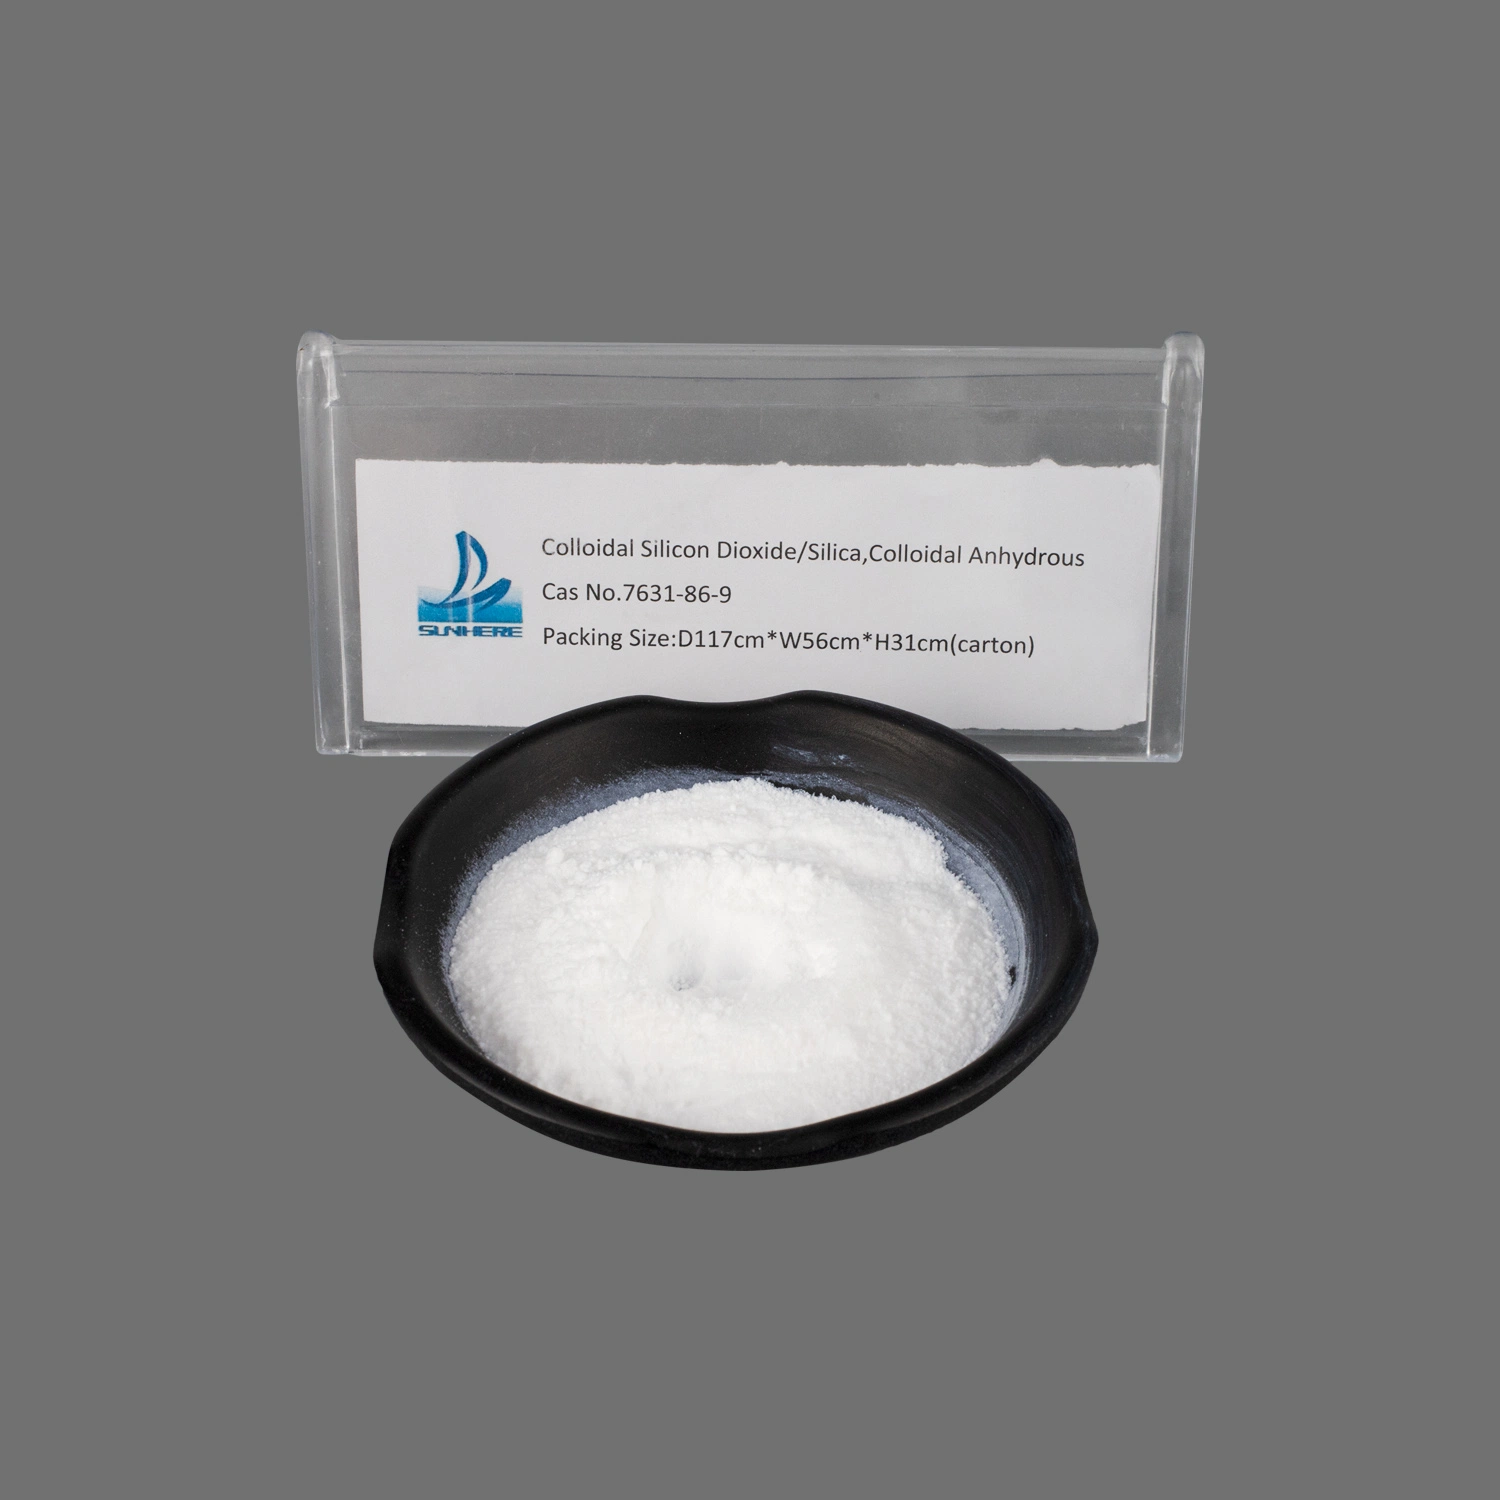 Grau Pharma Barato preço qualidade farmacêutica Fabricantes de dióxido de silício coloidal CAS 7631-86-9